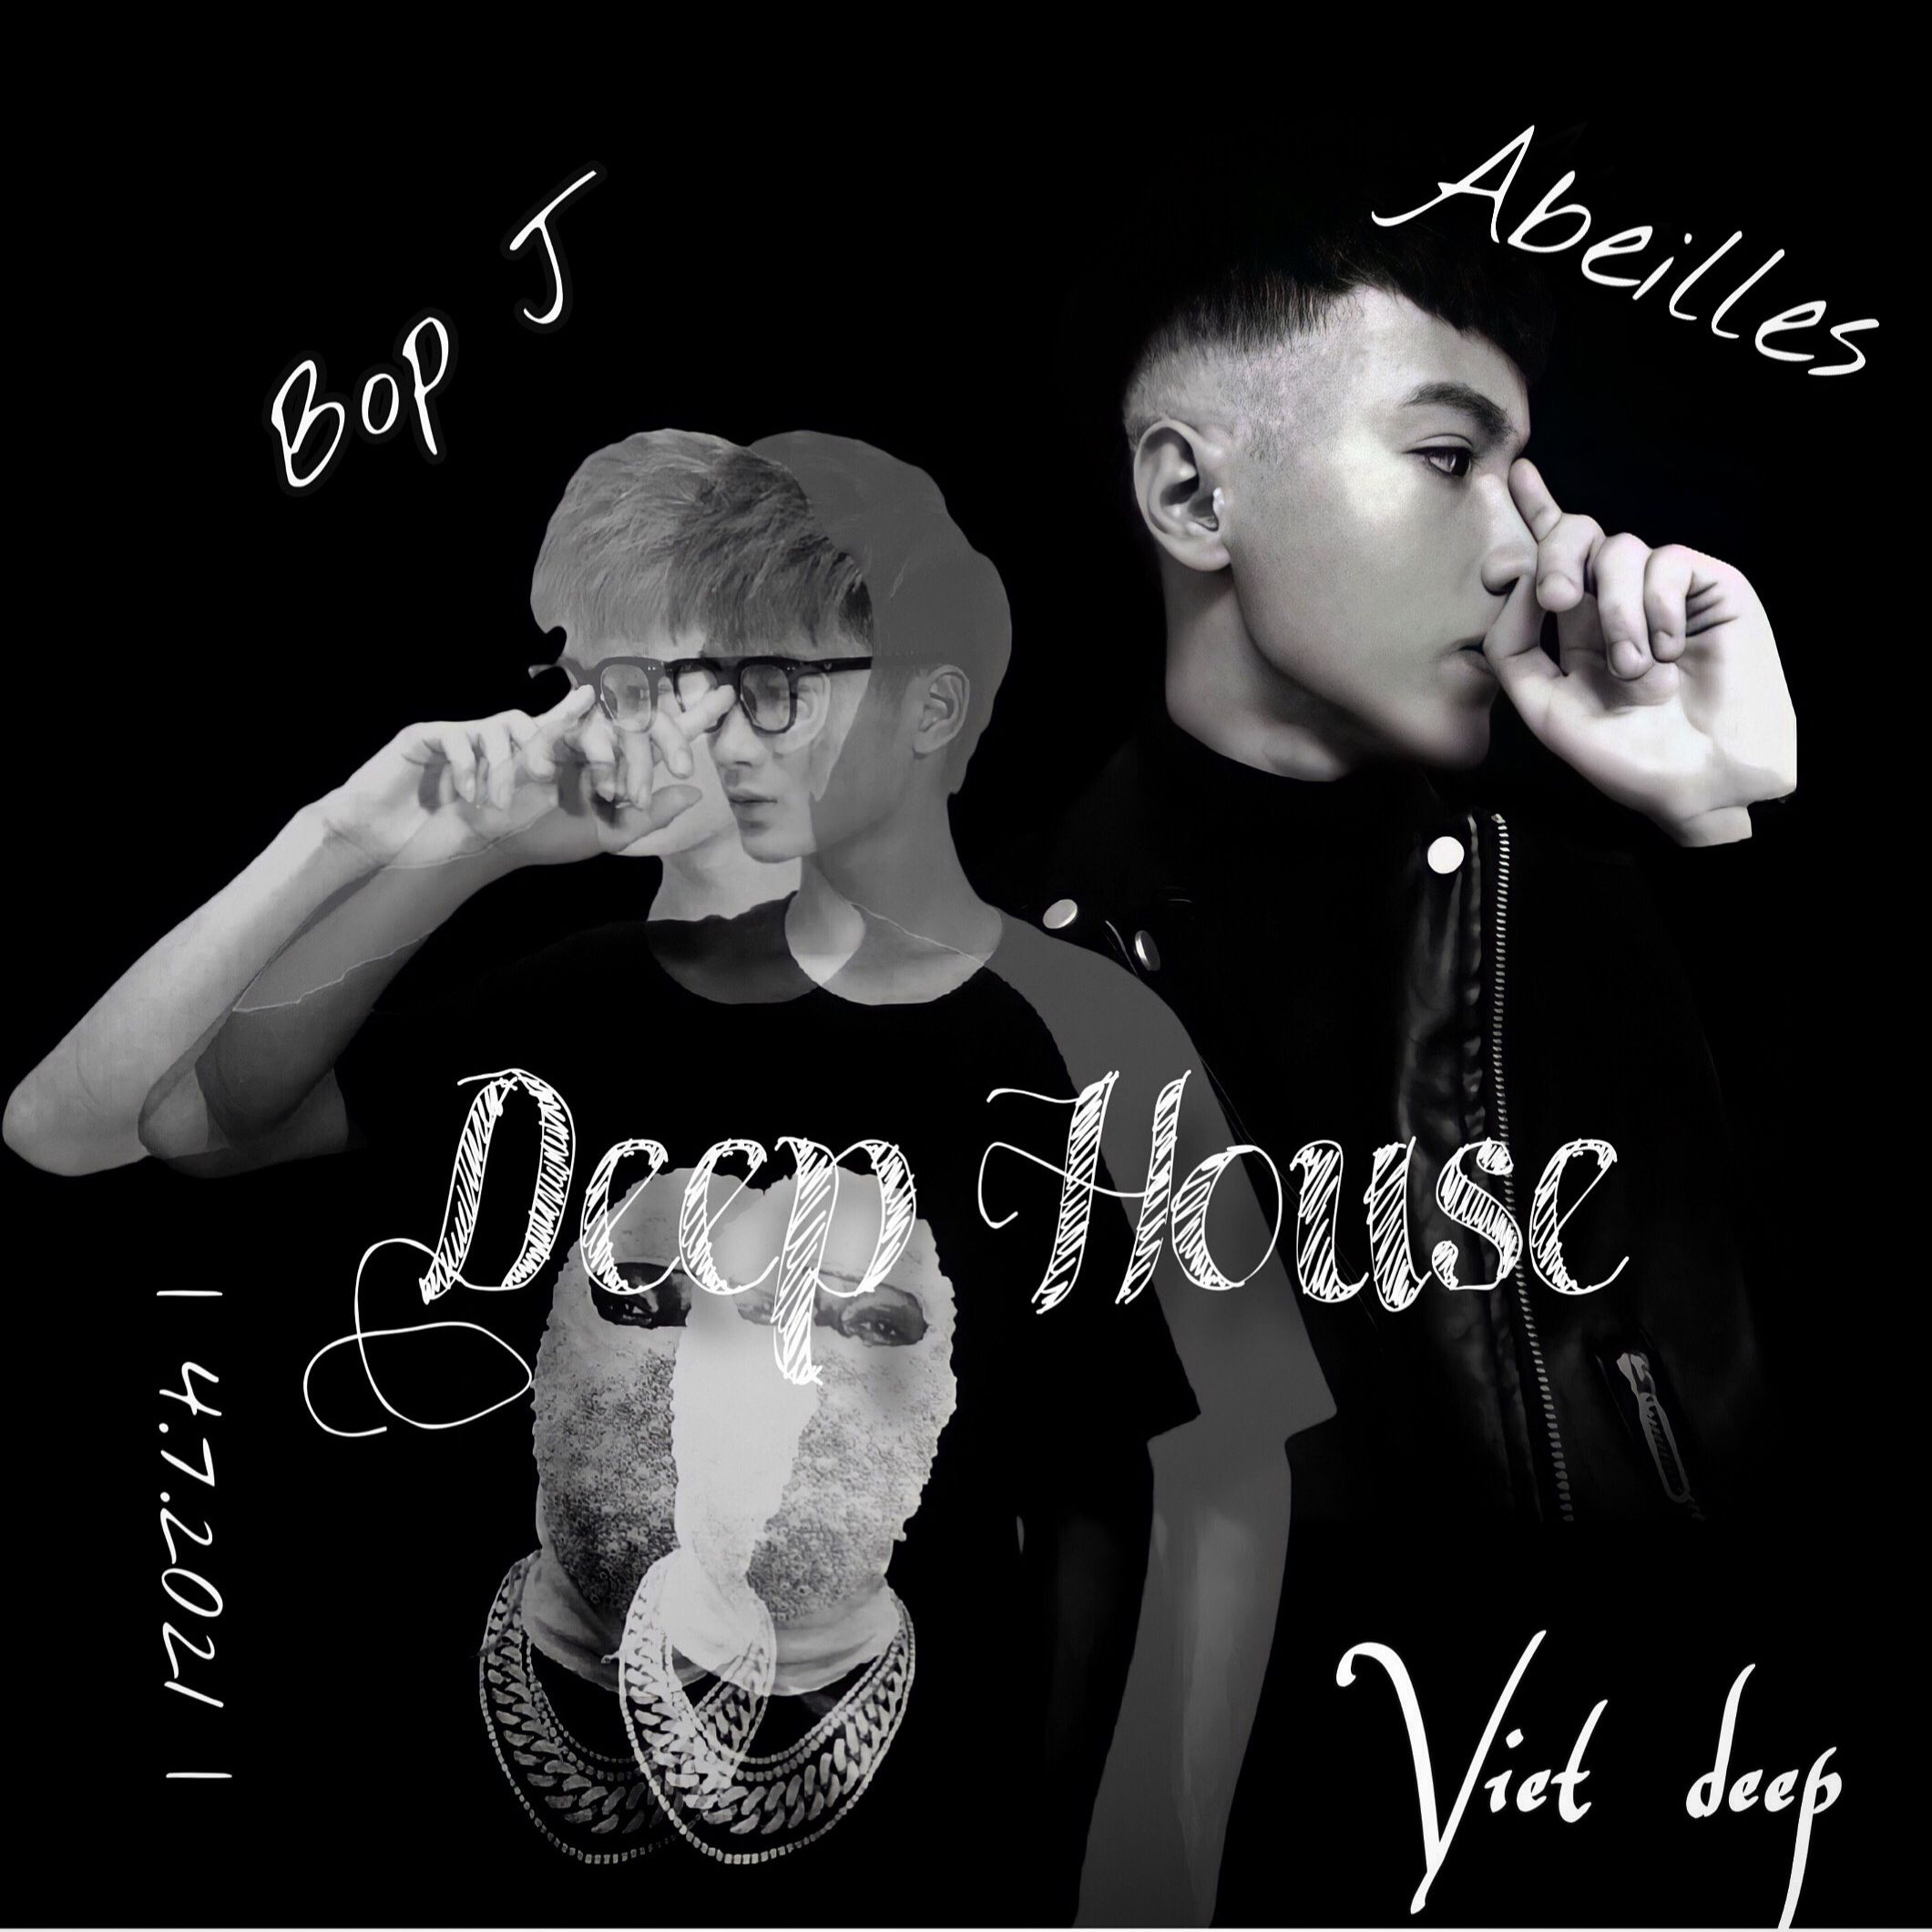 Daxistin DeepHouse - Vietmix - Hot TIKTOKK 2021 ( Bop J - Abeilles )